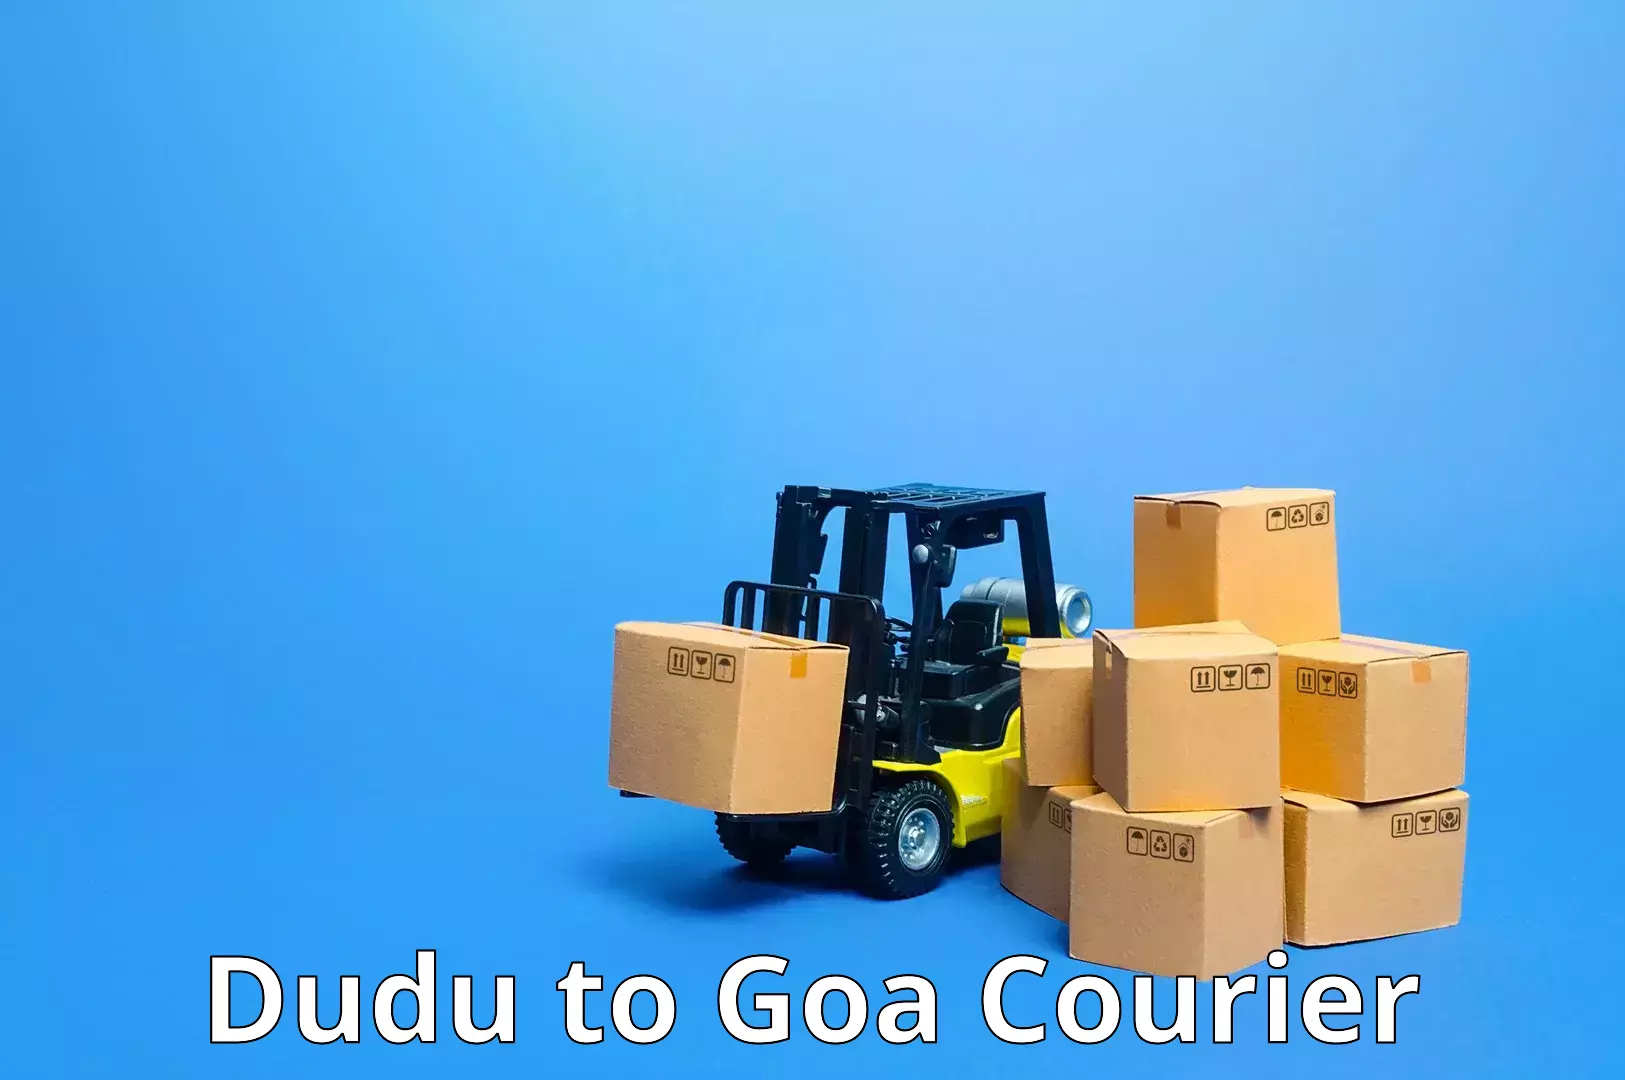 Courier service innovation Dudu to Mormugao Port